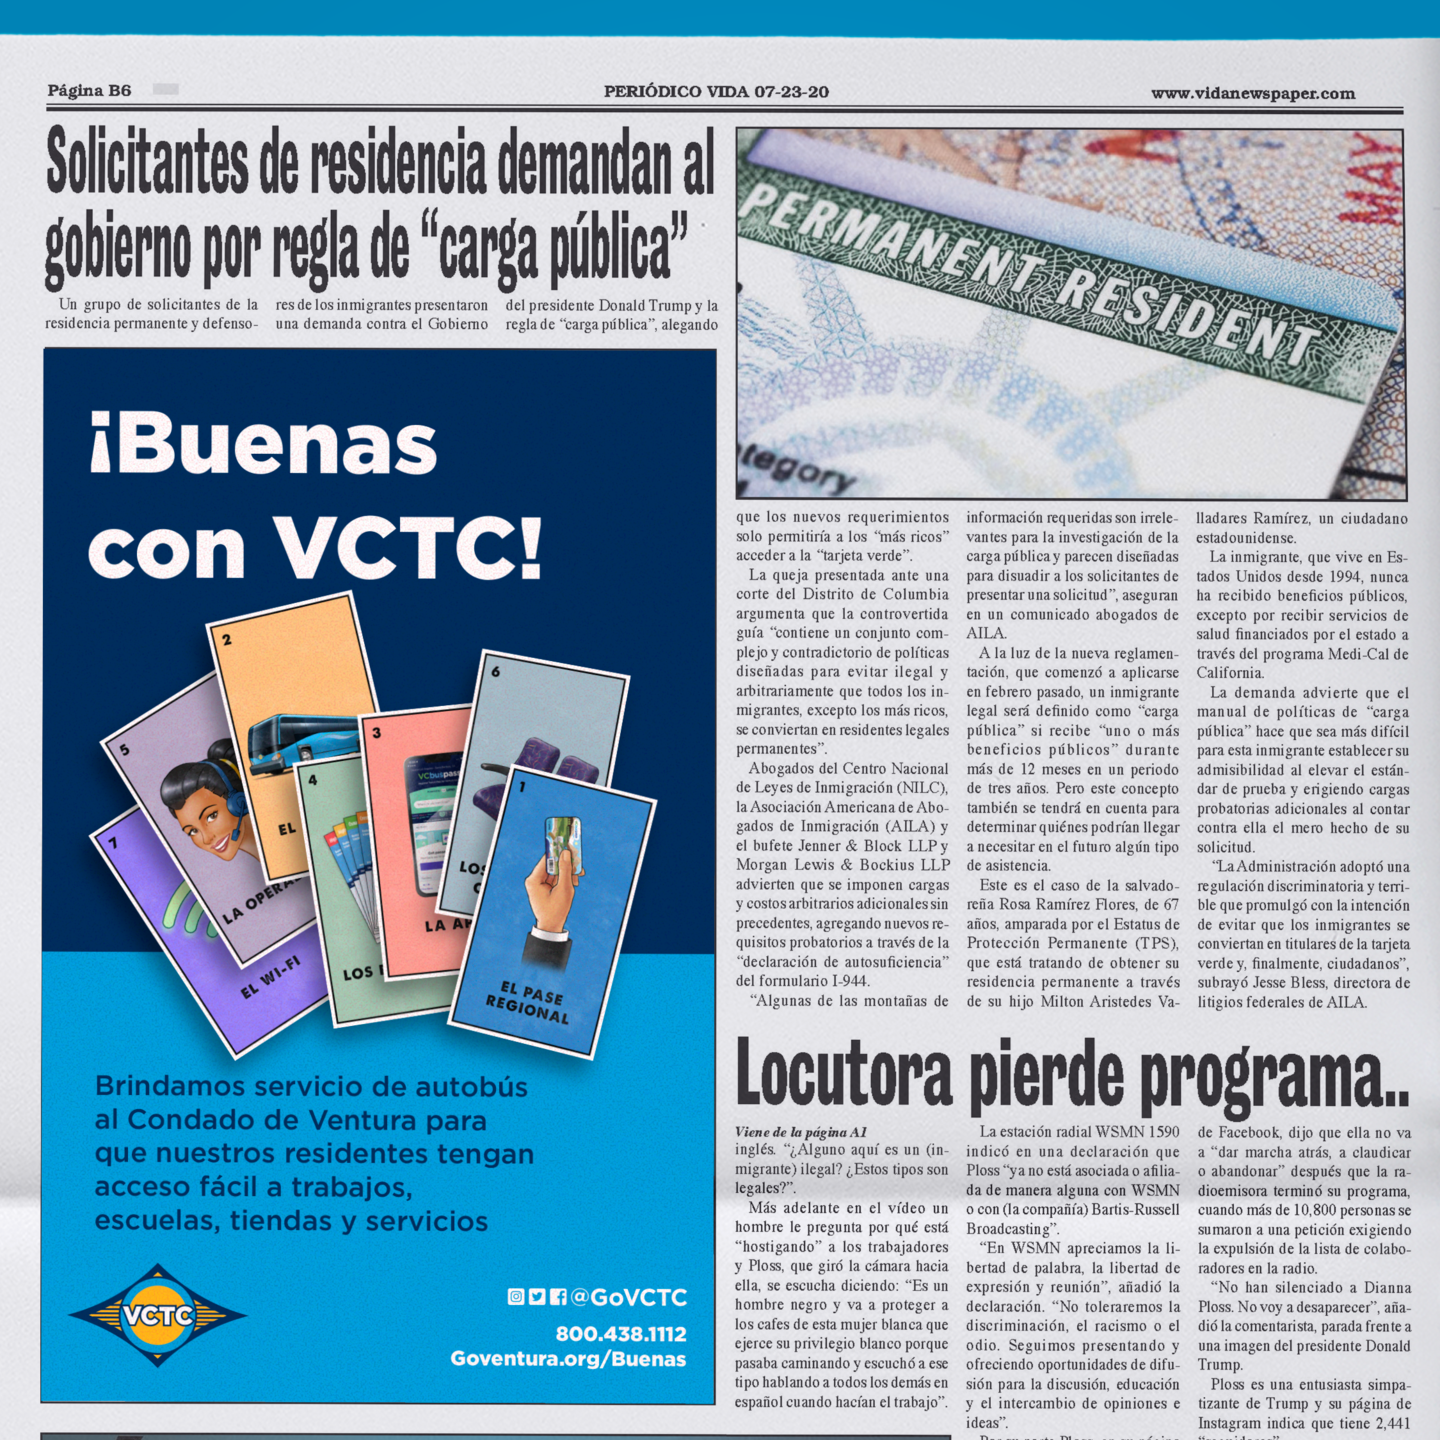 Buenas con VCTC newspaper ad